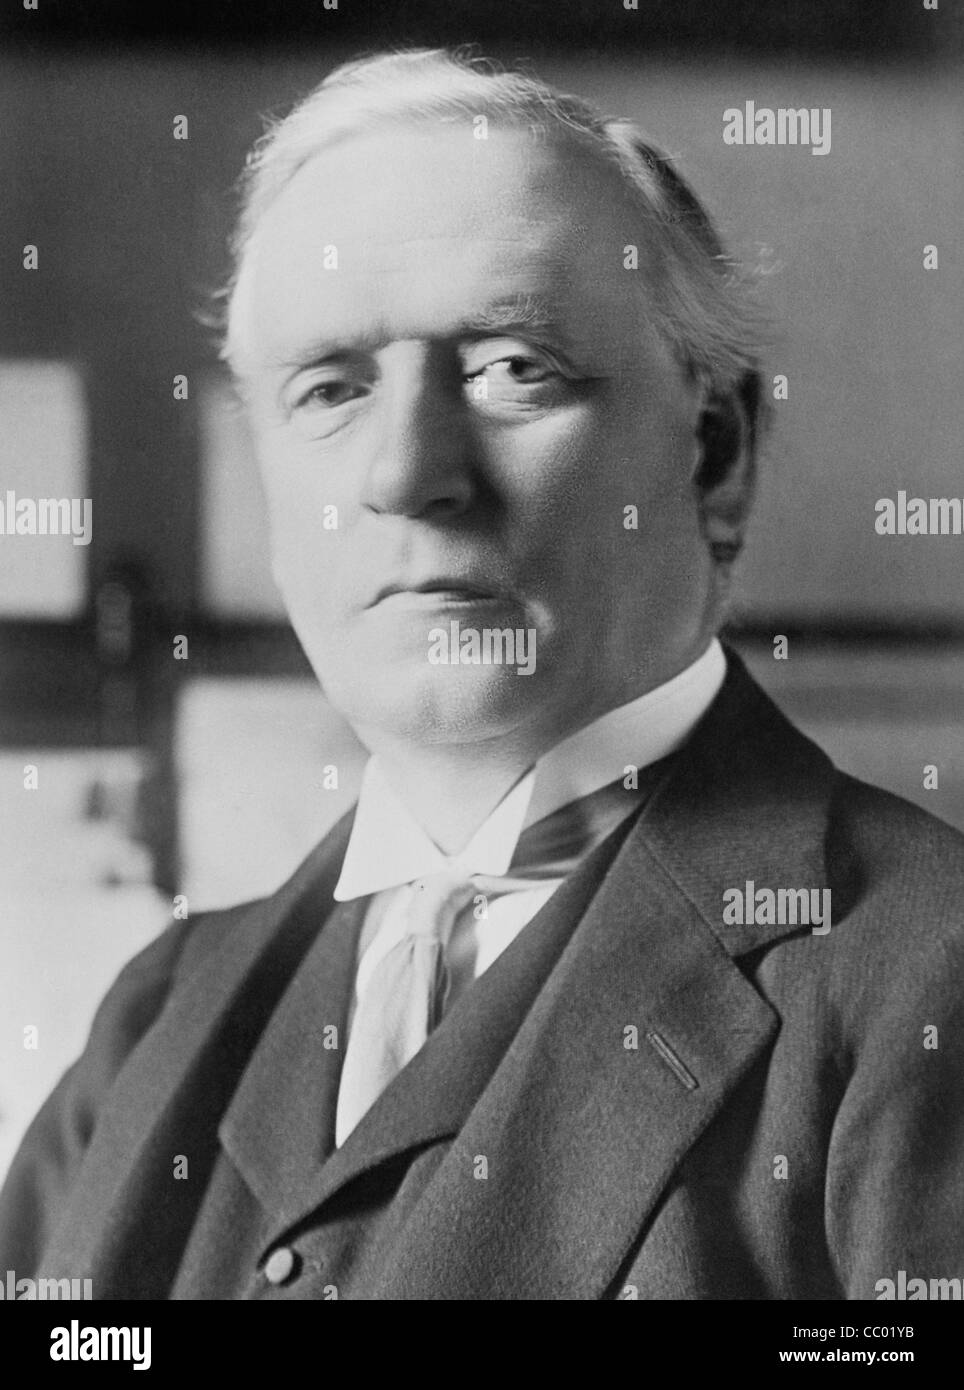 Vintage portrait photo vers 1914 de politicien britannique Herbert Henry Asquith (1852 - 1928) - Parti libéral Premier Ministre du Royaume-Uni de 1908 - 1916. Banque D'Images